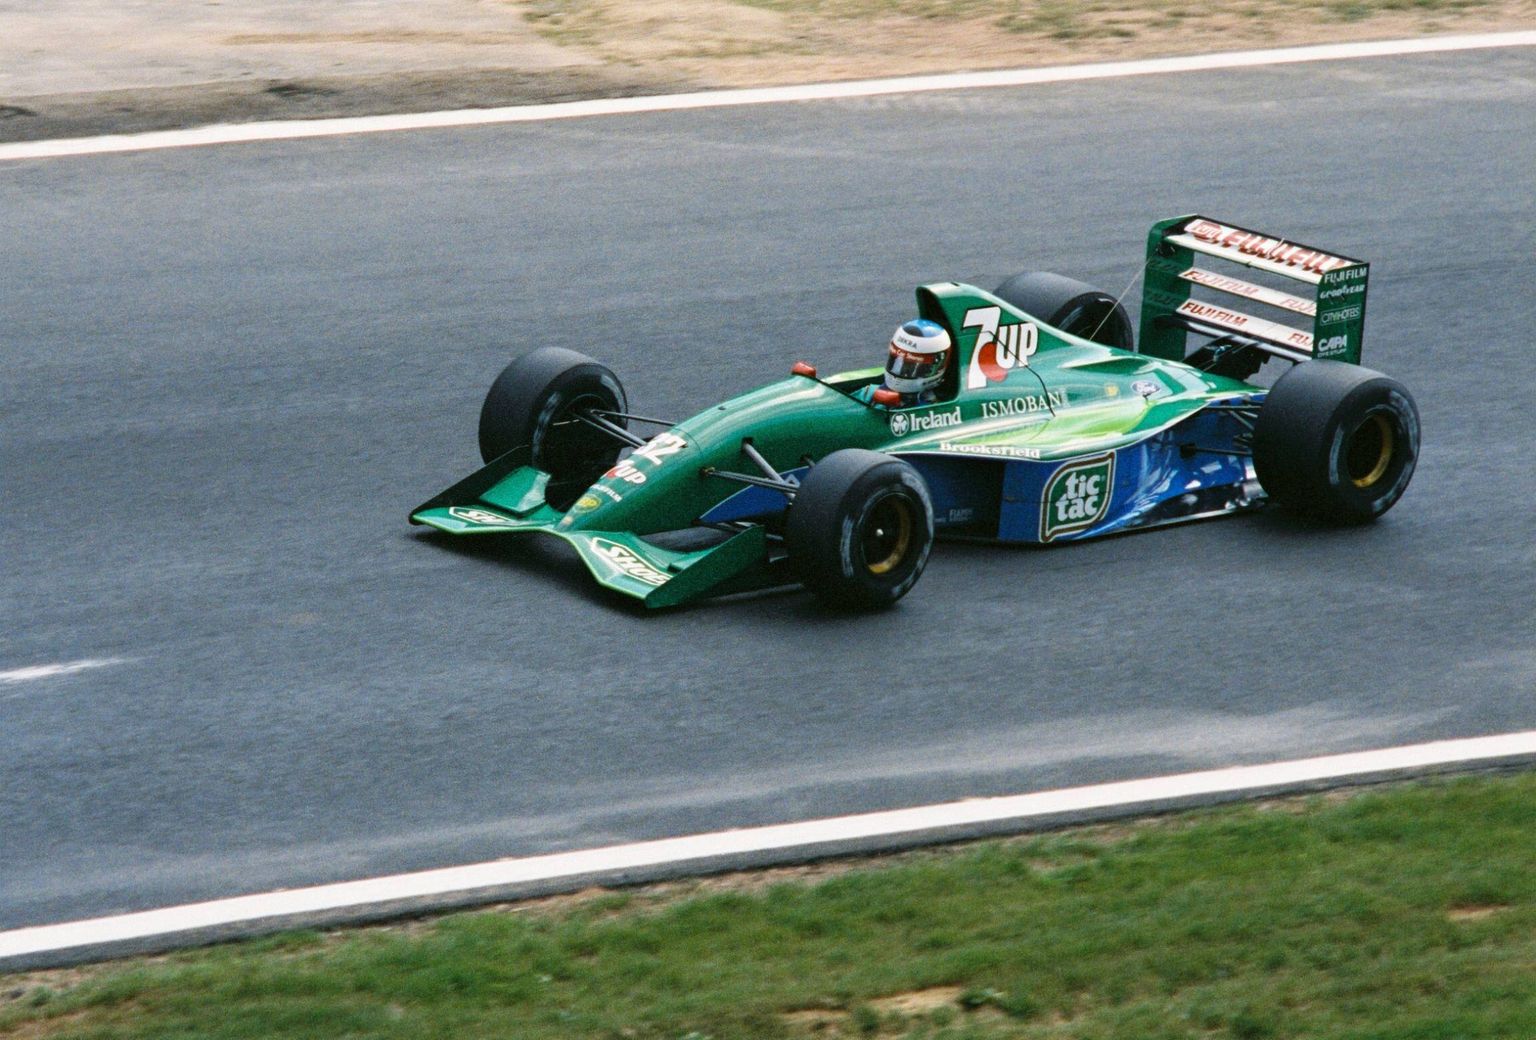 Michael Schumacher debüüt 1991. aastal Spa rajal lõppes siduririkke tõttu vaid sajakonna meetri järel. Ühtlasi sai järsult otsa tema äsja alanud karjäär Jordanis.